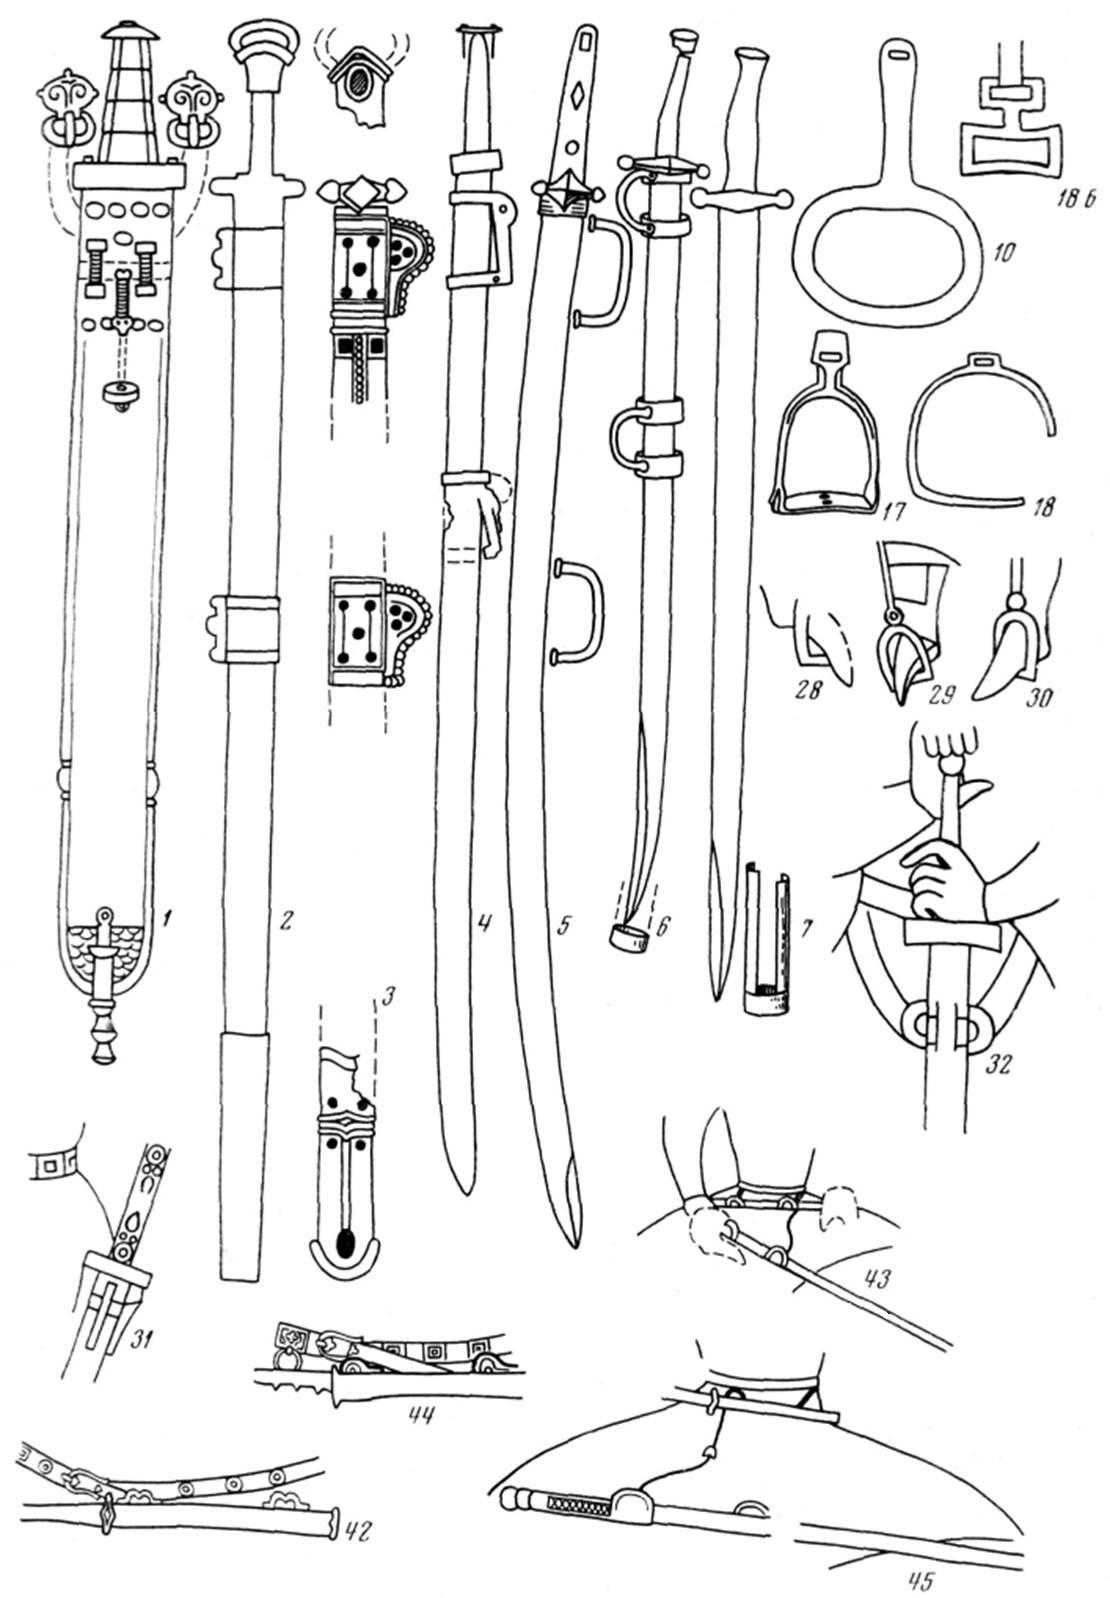 Оружие и снаряжение всадников 5-7 веков по А. Амброзу